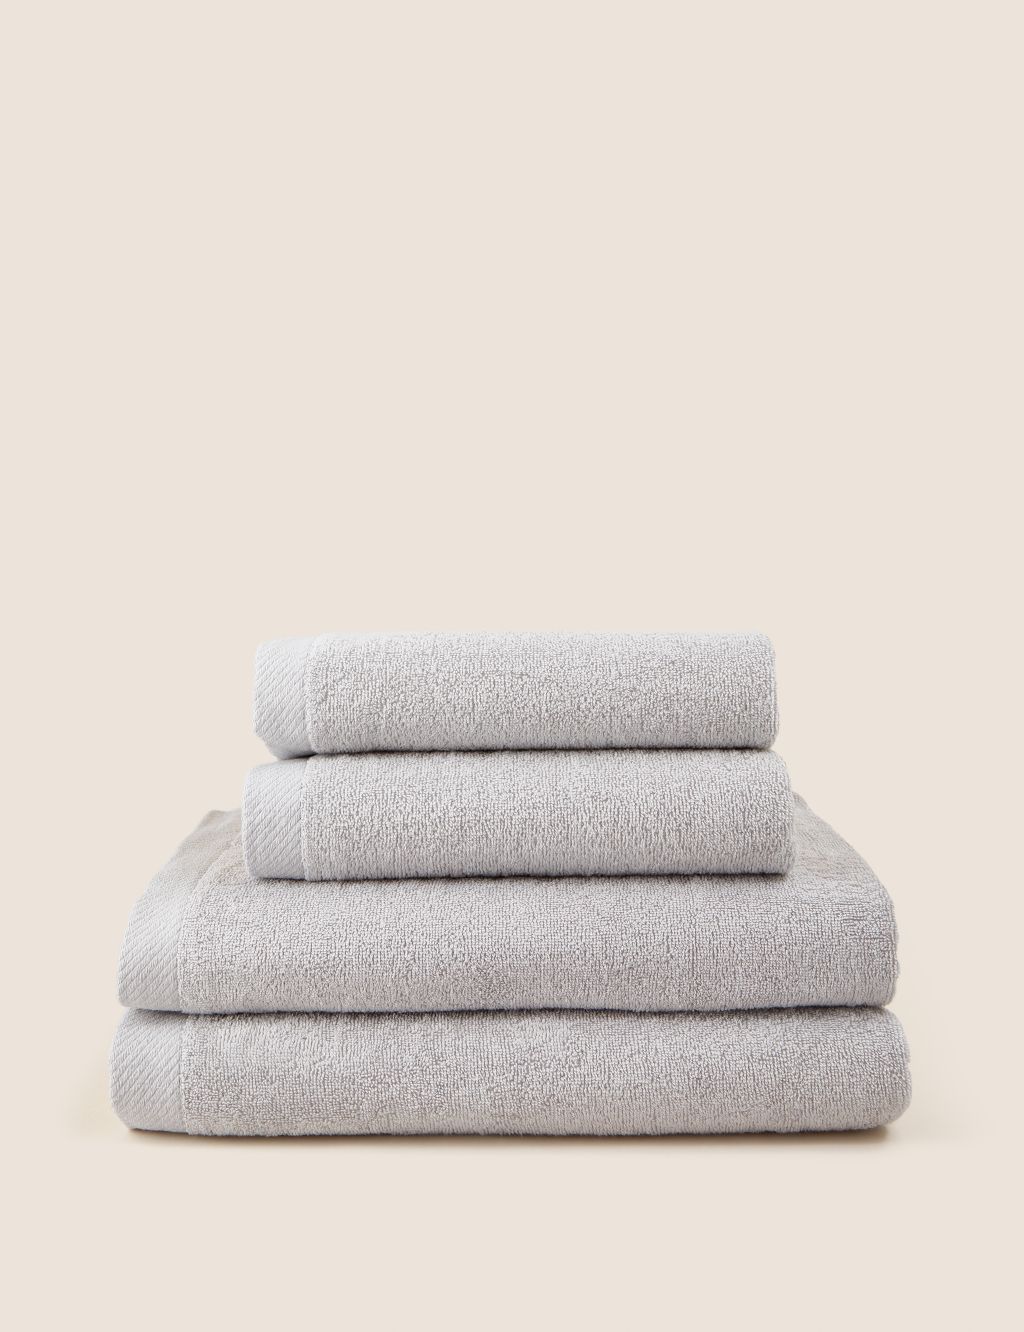 Remarksable Pure Cotton Towel Bundle image 1